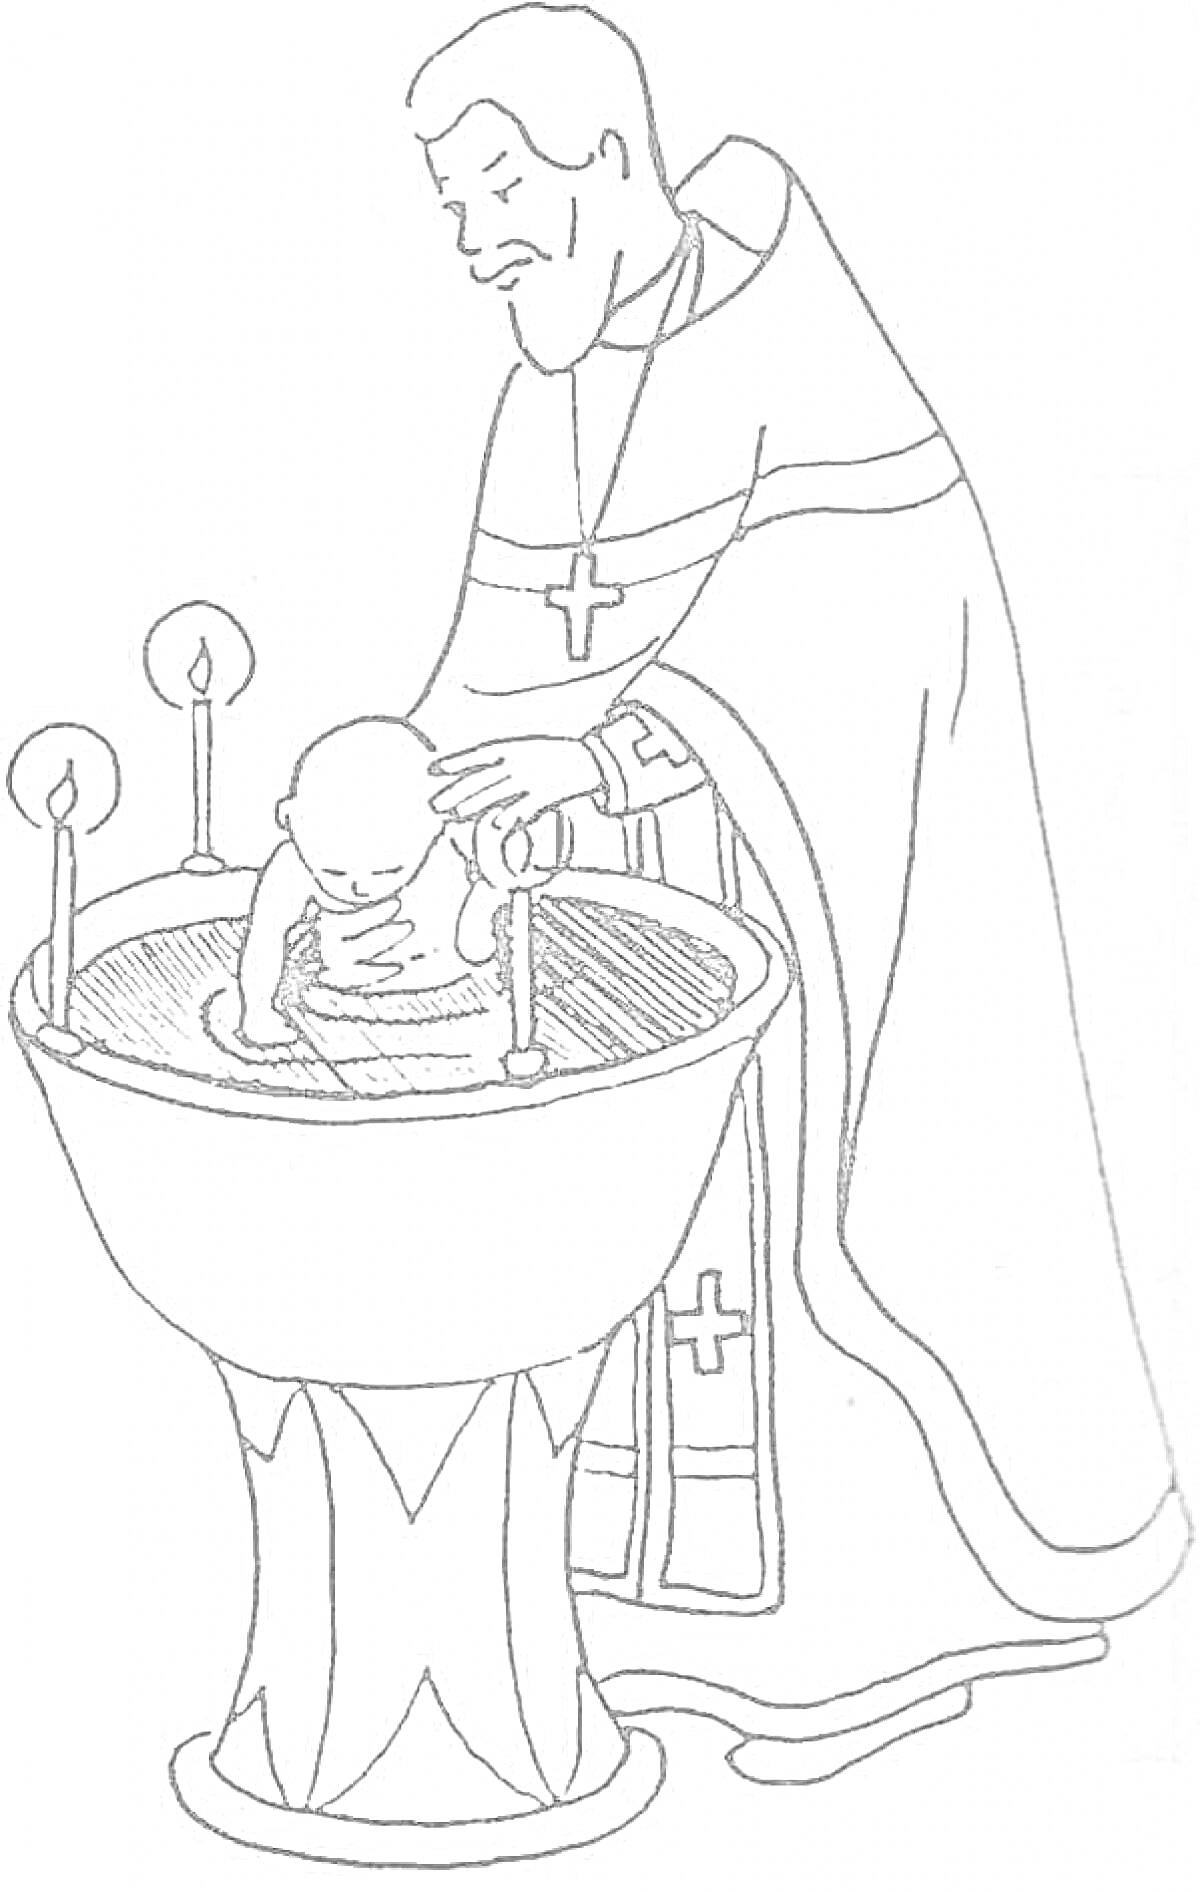 Священник крестит младенца в купели с зажженными свечами